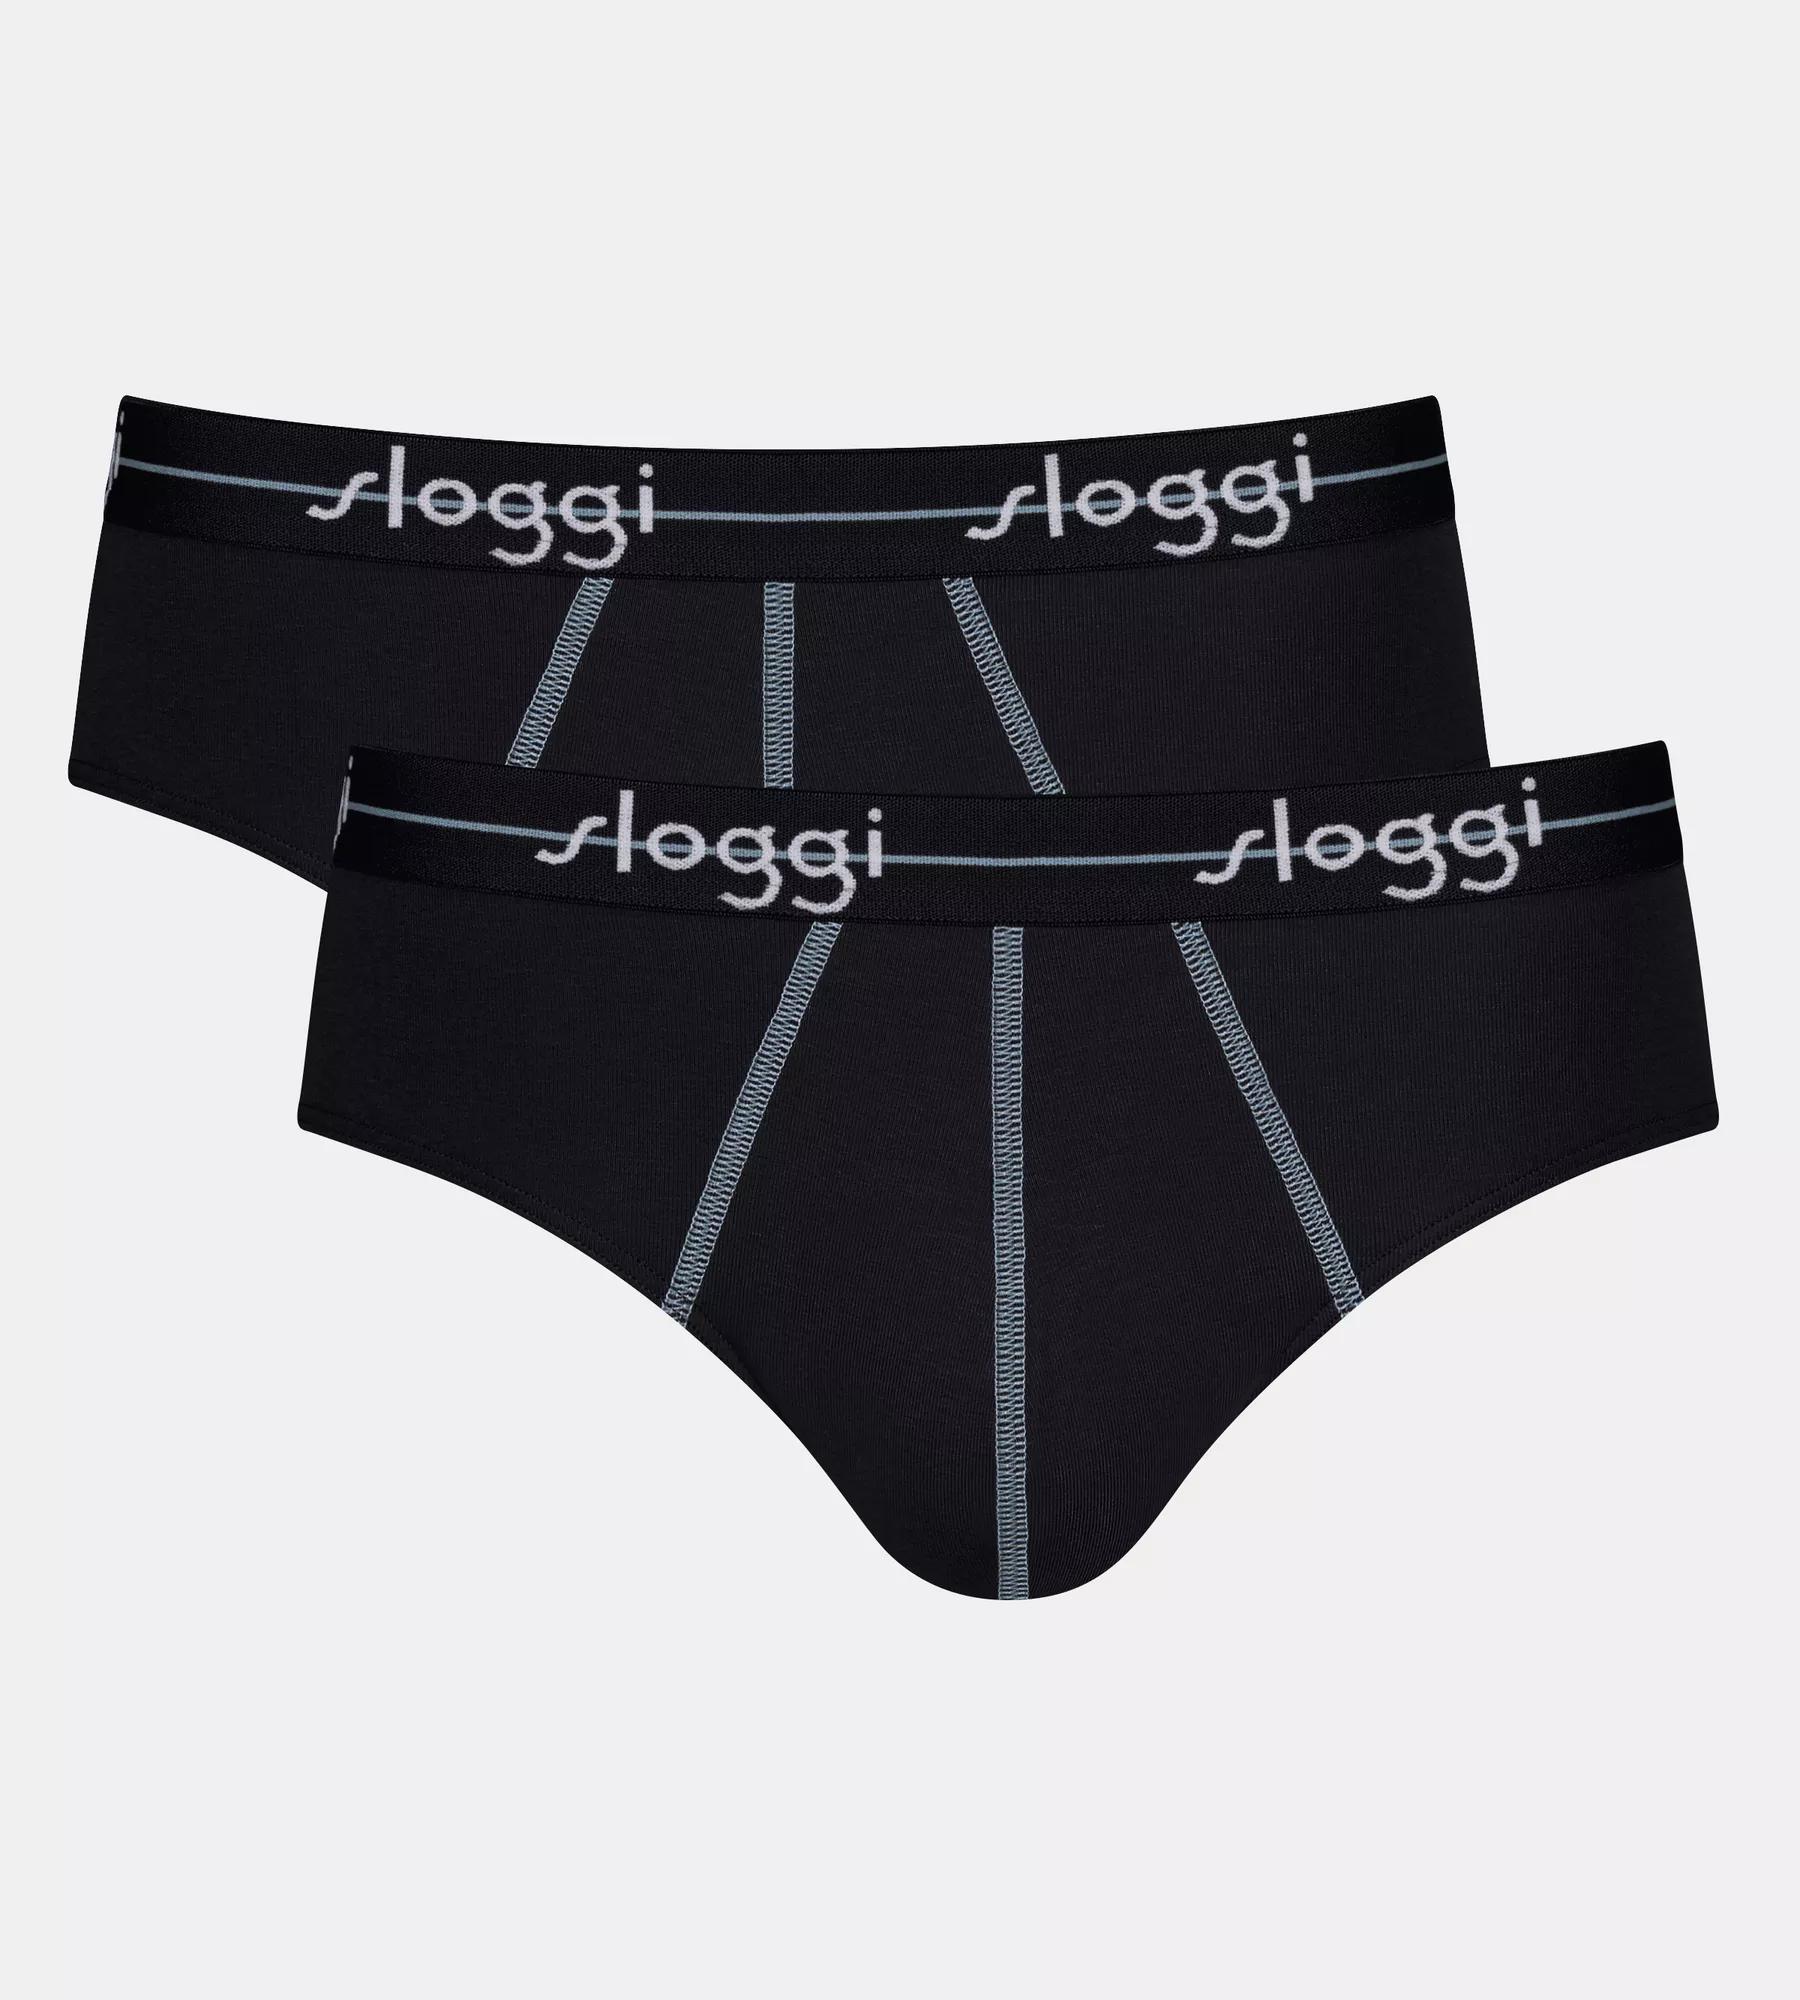 Men's Sloggi Go ABC Midi Briefs Pants 2 Pack 95% Cotton 10201626 RRP £25.00